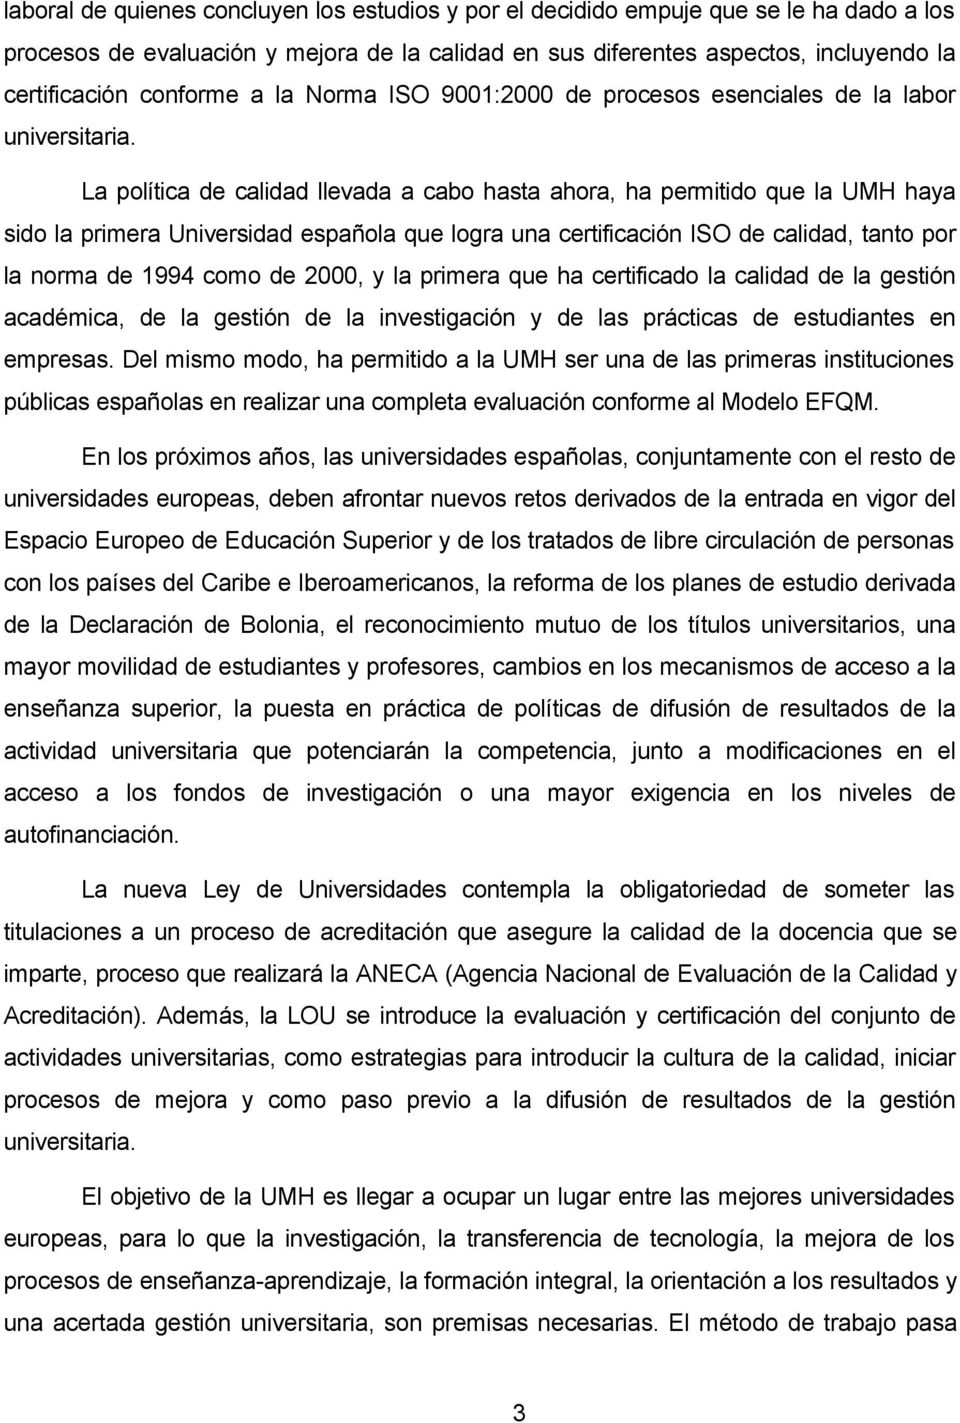 La política de calidad llevada a cabo hasta ahora, ha permitido que la UMH haya sido la primera Universidad española que logra una certificación ISO de calidad, tanto por la norma de 1994 como de